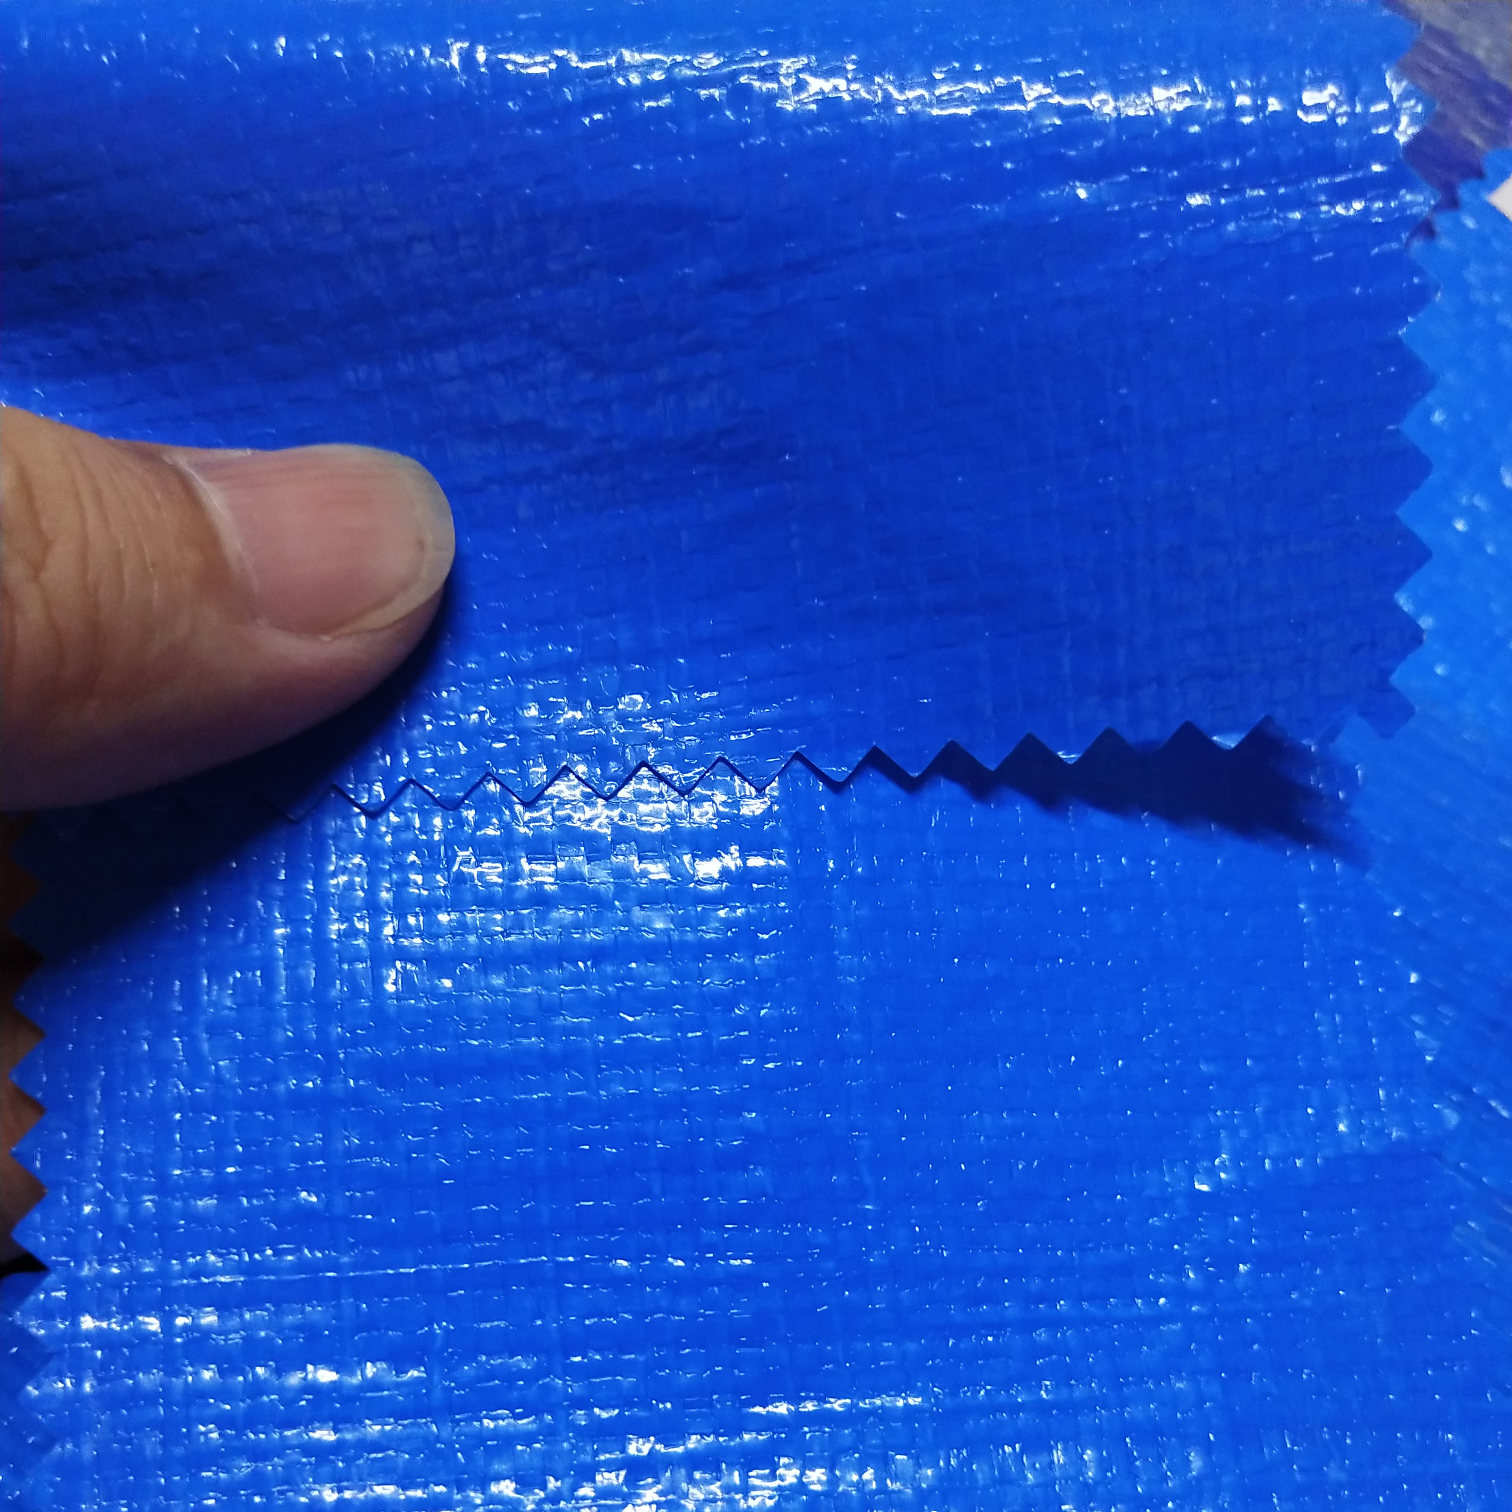 双面淋膜230克双蓝PE防水布  塑料编织布  适用于花房篷布 汽车篷布 帐篷底布 各种手提袋  收纳箱专用面料